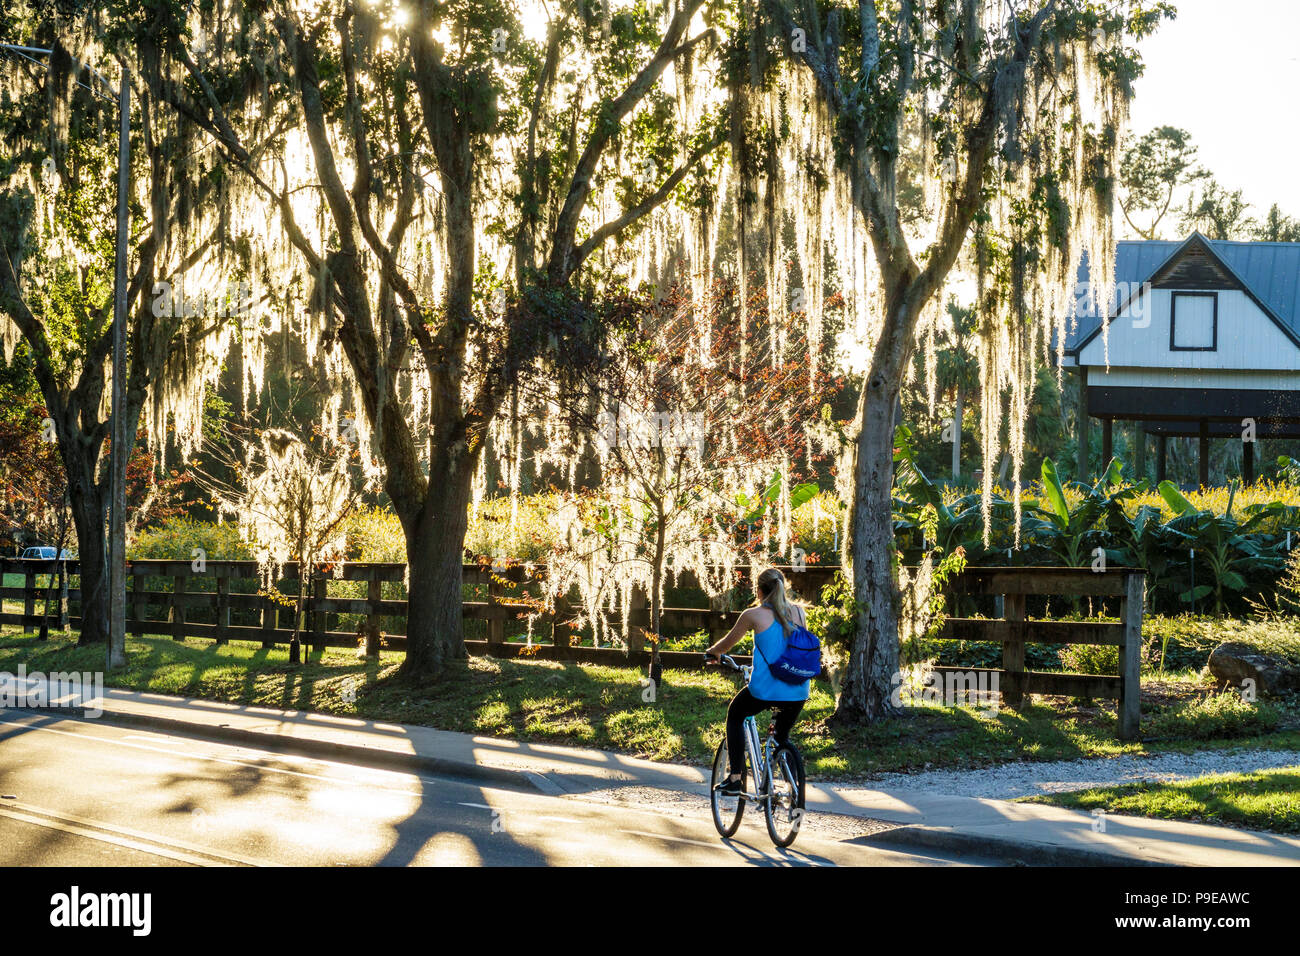 Gainesville Florida,Université de Floride,campus,Museum Road,arbre couvert de mousse espagnole,étudiants filles,femme enfant enfants enfants youn Banque D'Images